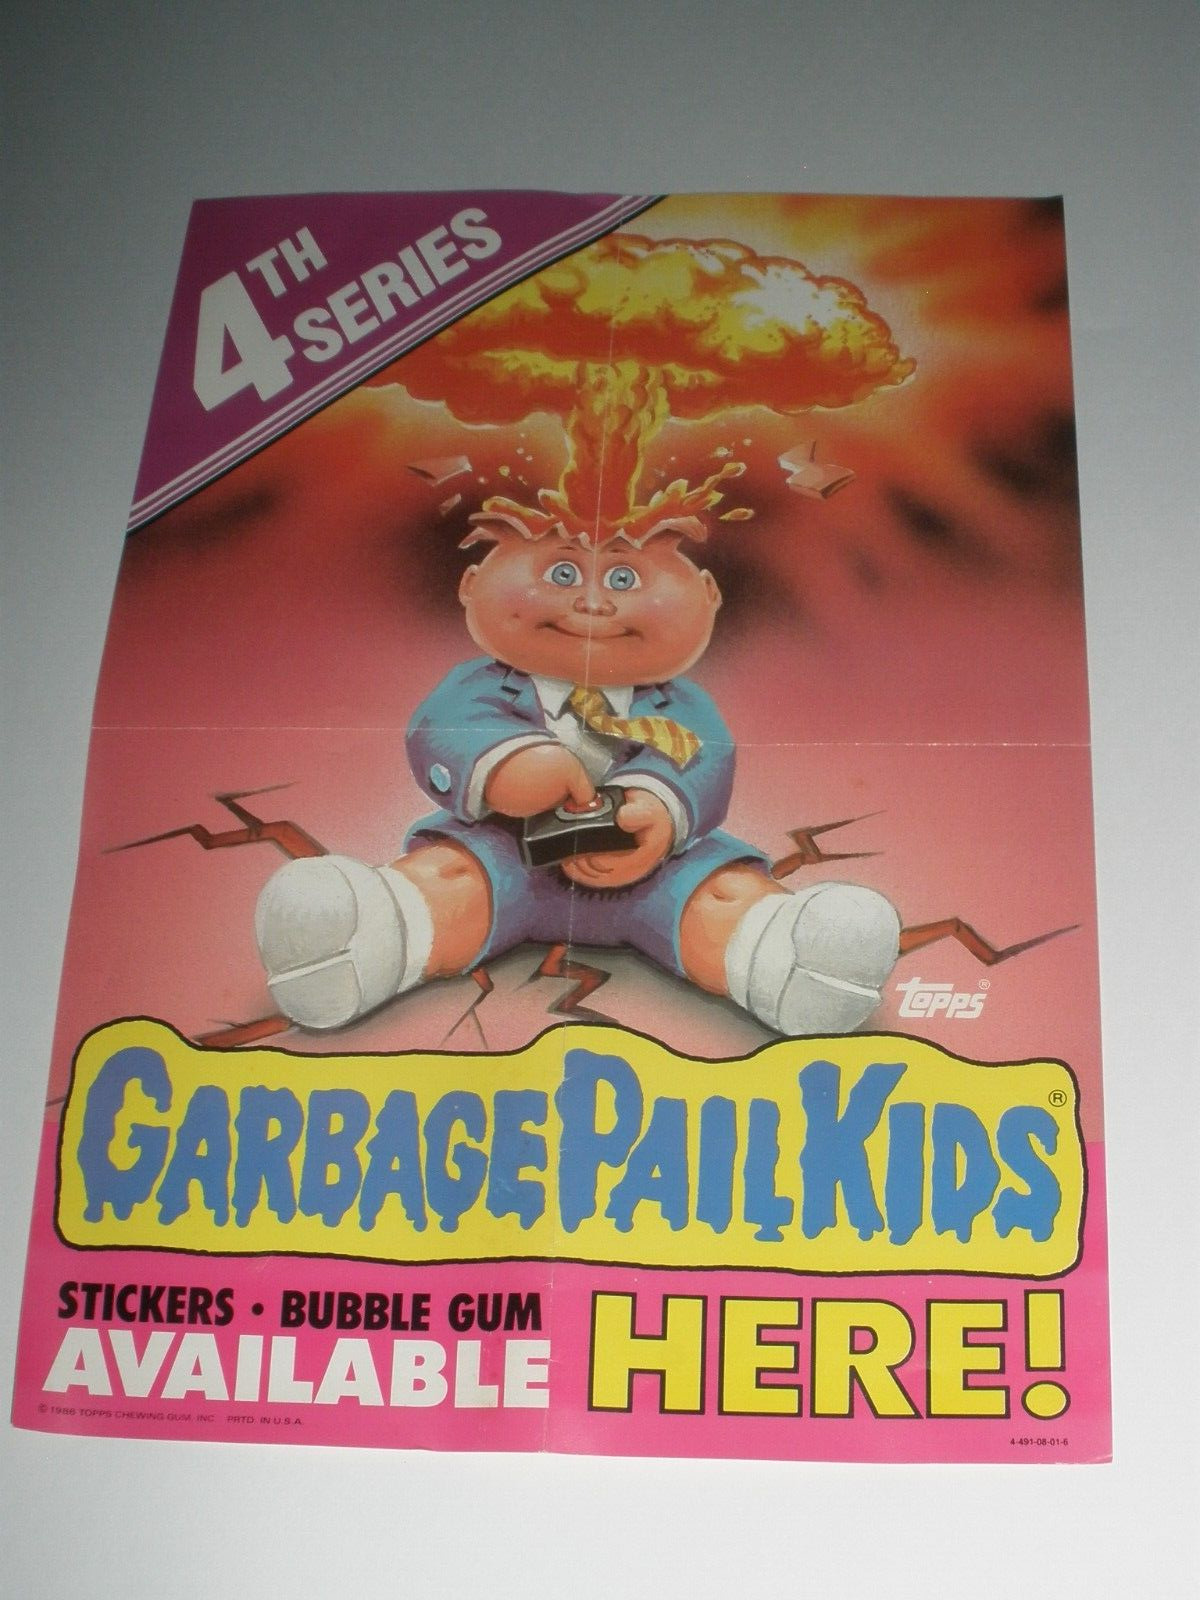 RARE VINTAGE 1986 GARBAGE PAIL KIDS SERIES 4  RETAIL PROMO POSTER AD